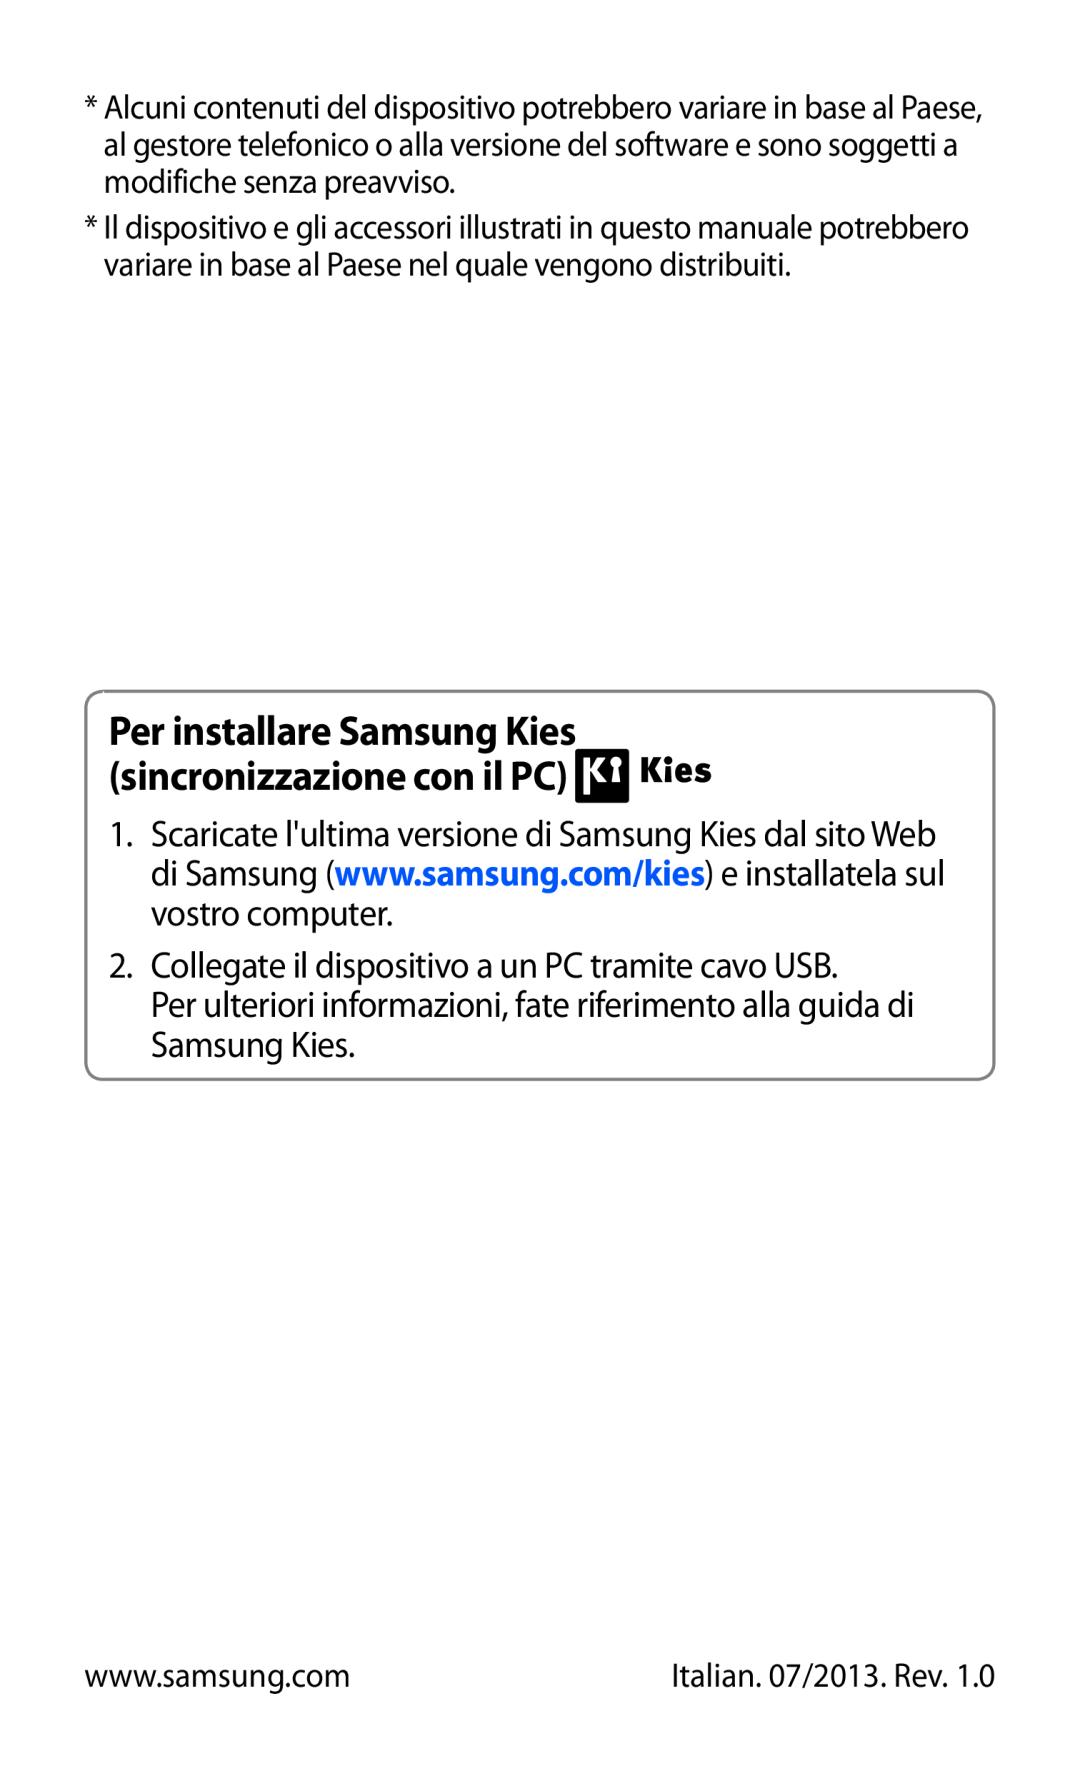 Samsung GT-S7560UWAOMN, GT-S7560UWAWIN manual Per installare Samsung Kies sincronizzazione con il PC, Italian. 07/2013. Rev 